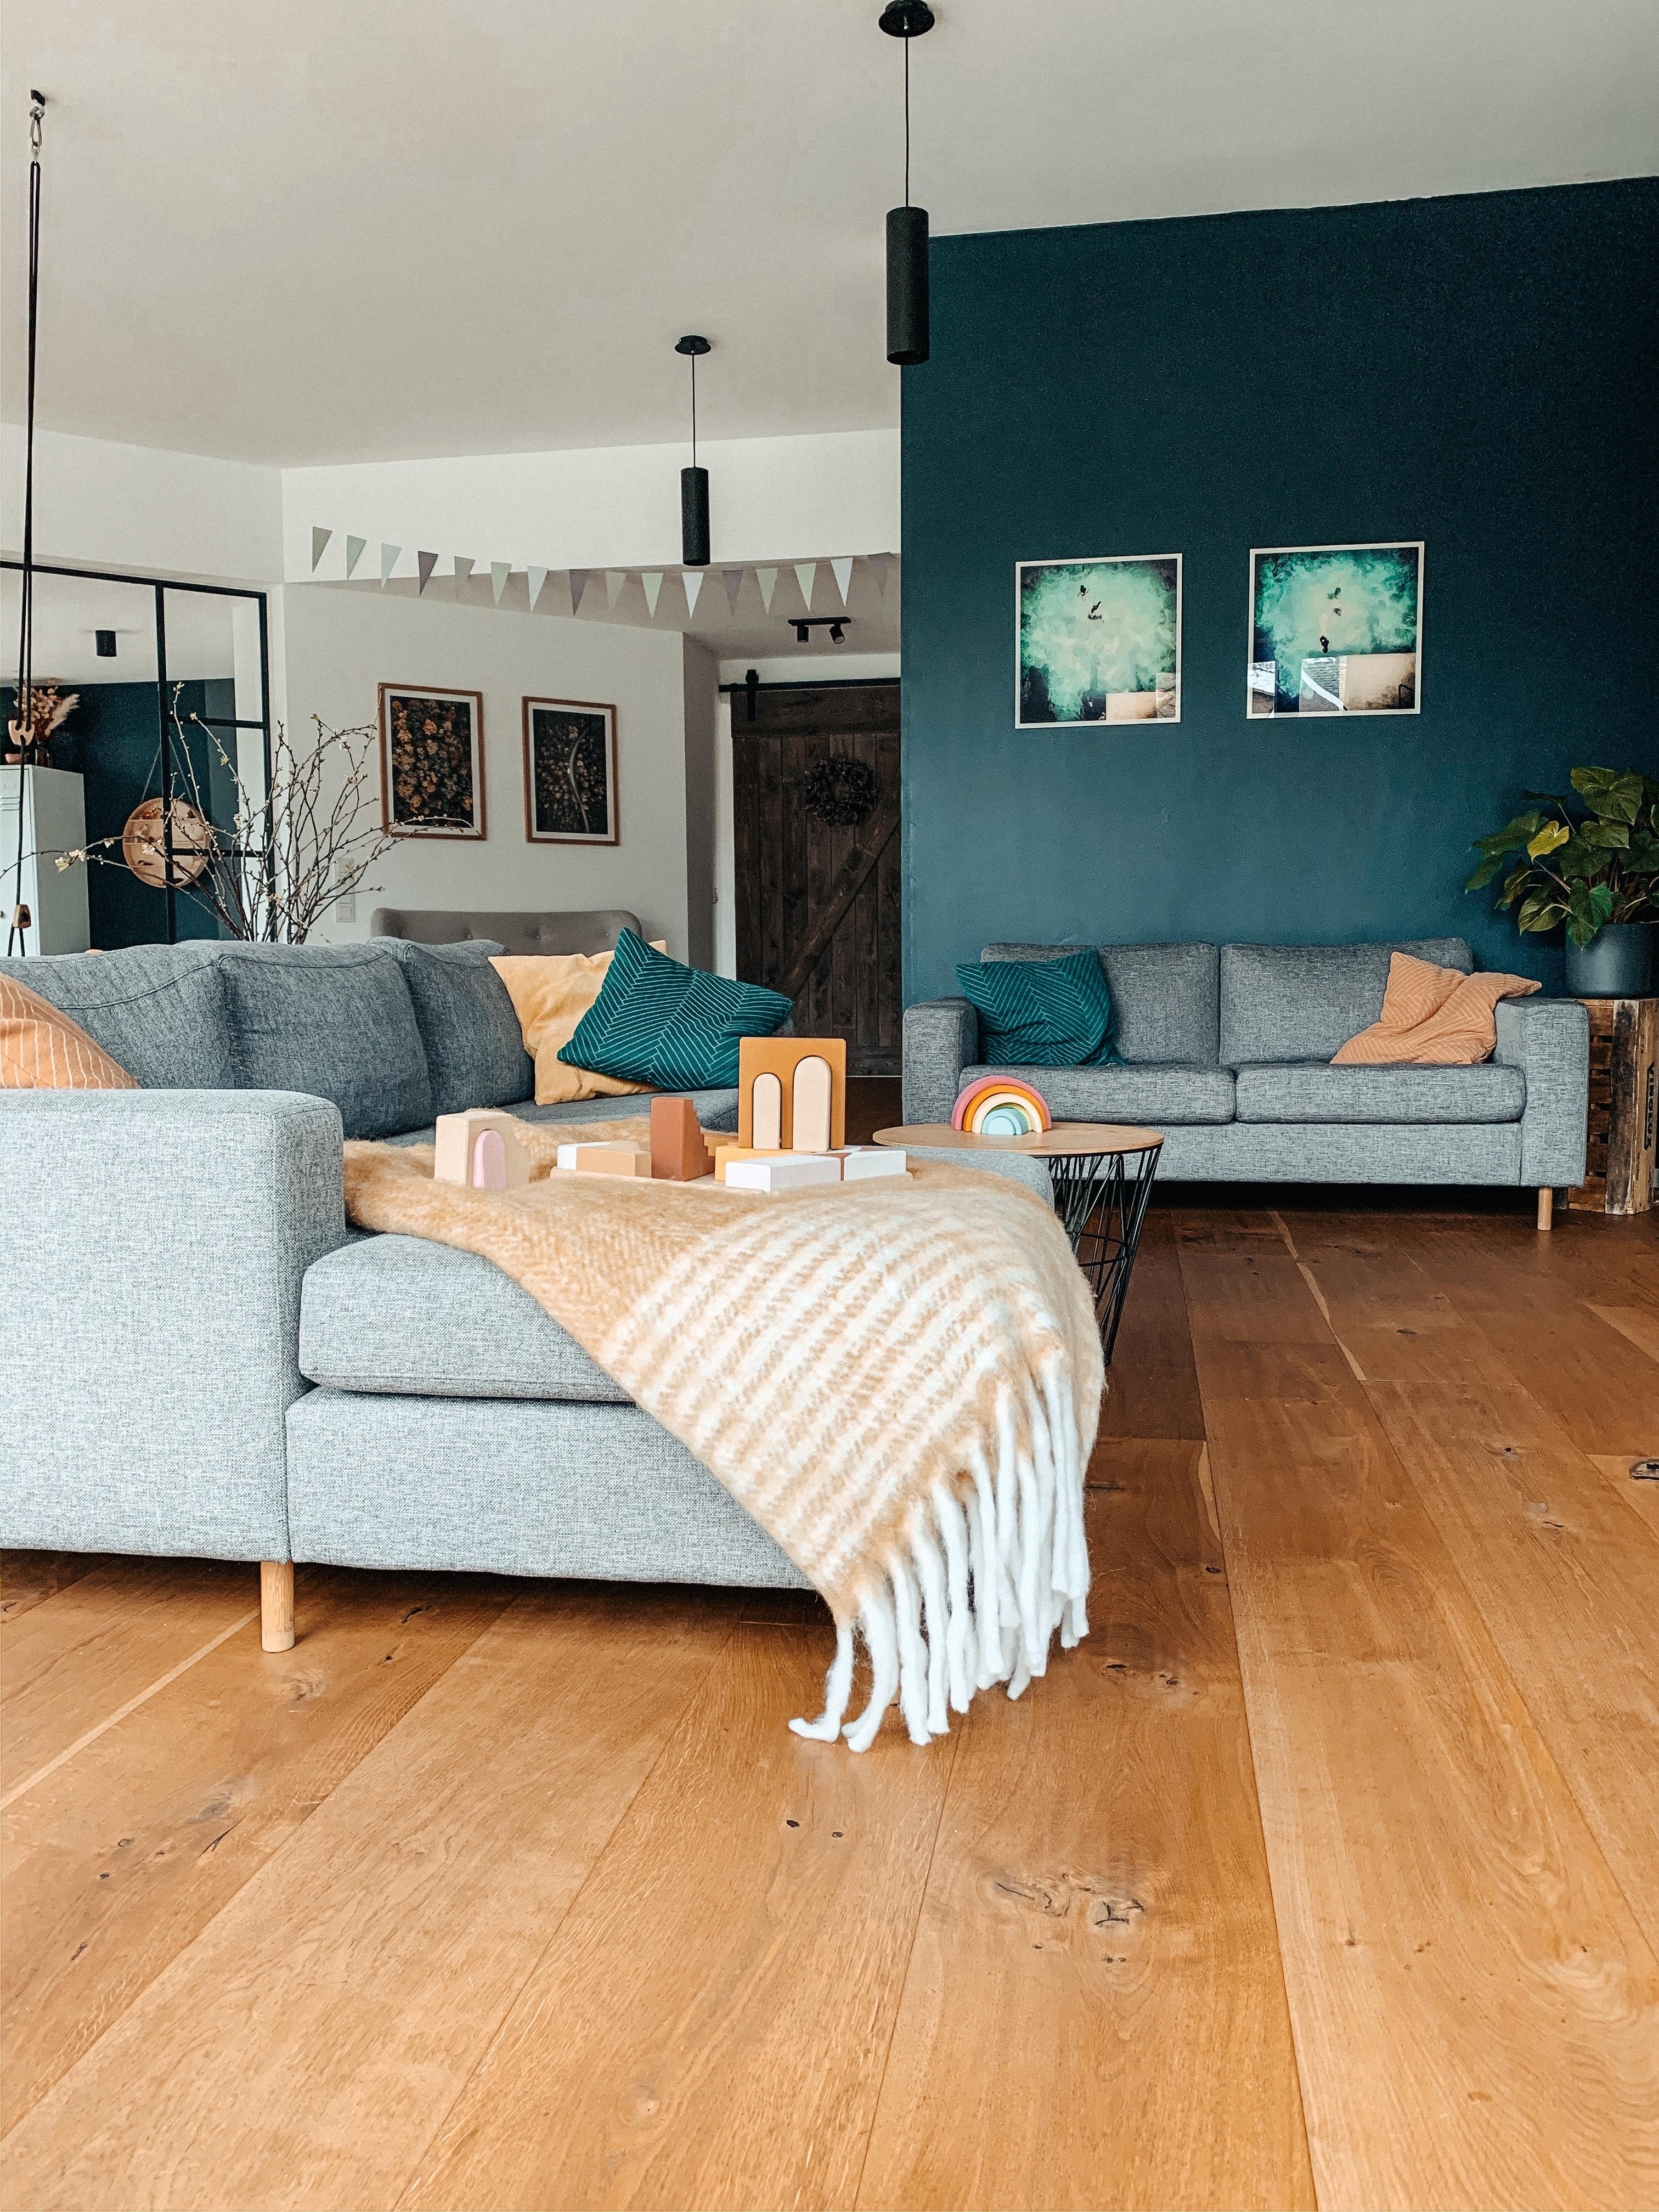 #Hyggelig Wohnen #interior #couch #livingroom